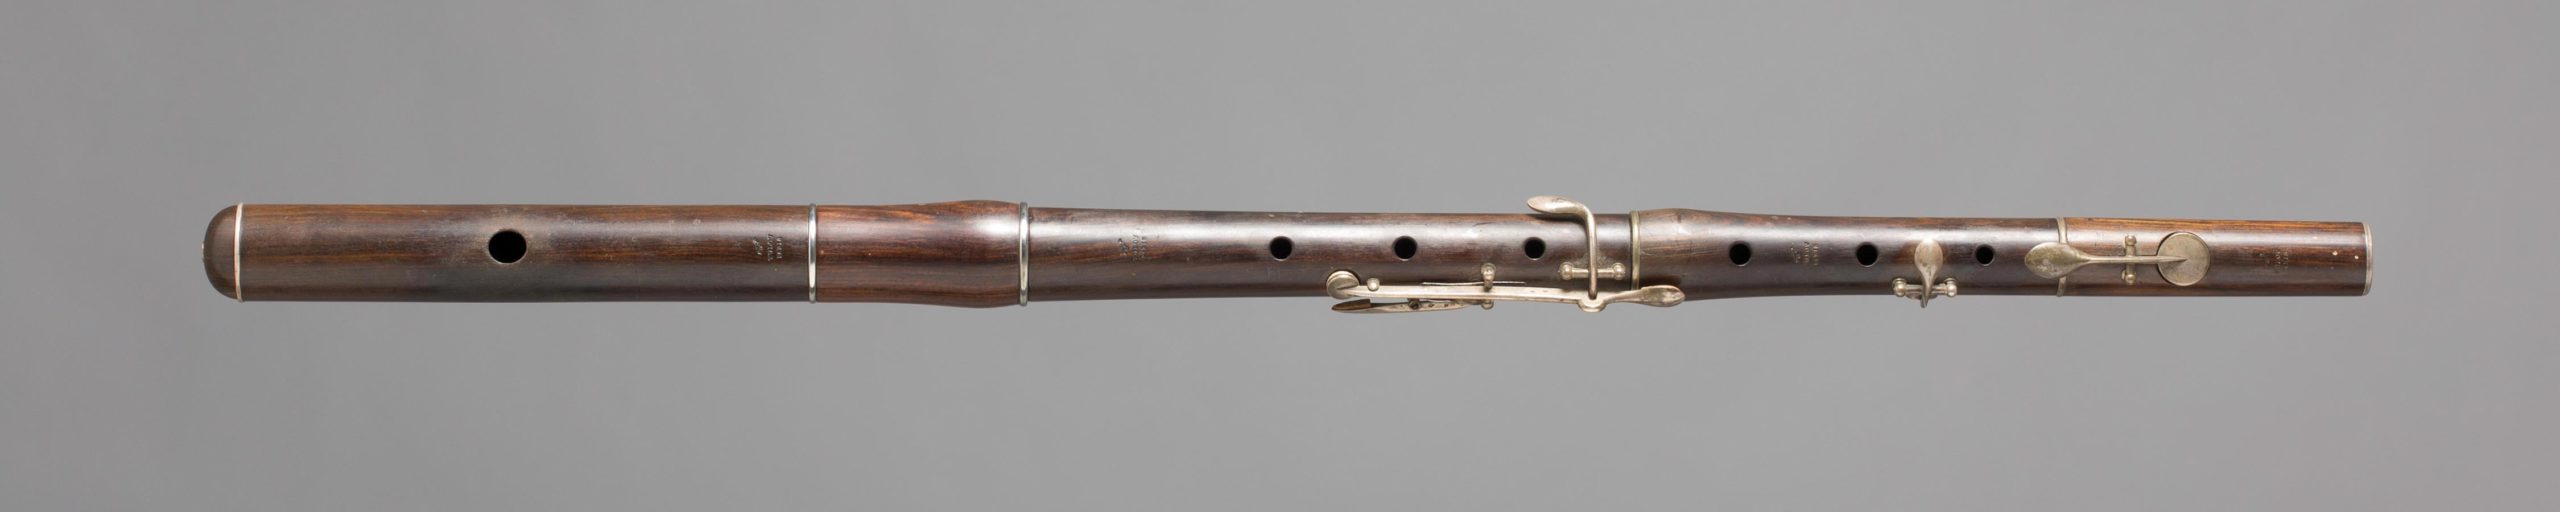 Flûte conique en grenadille, cinq clefs et bagues argent par TULOU à Paris. Collection Kaltenbach